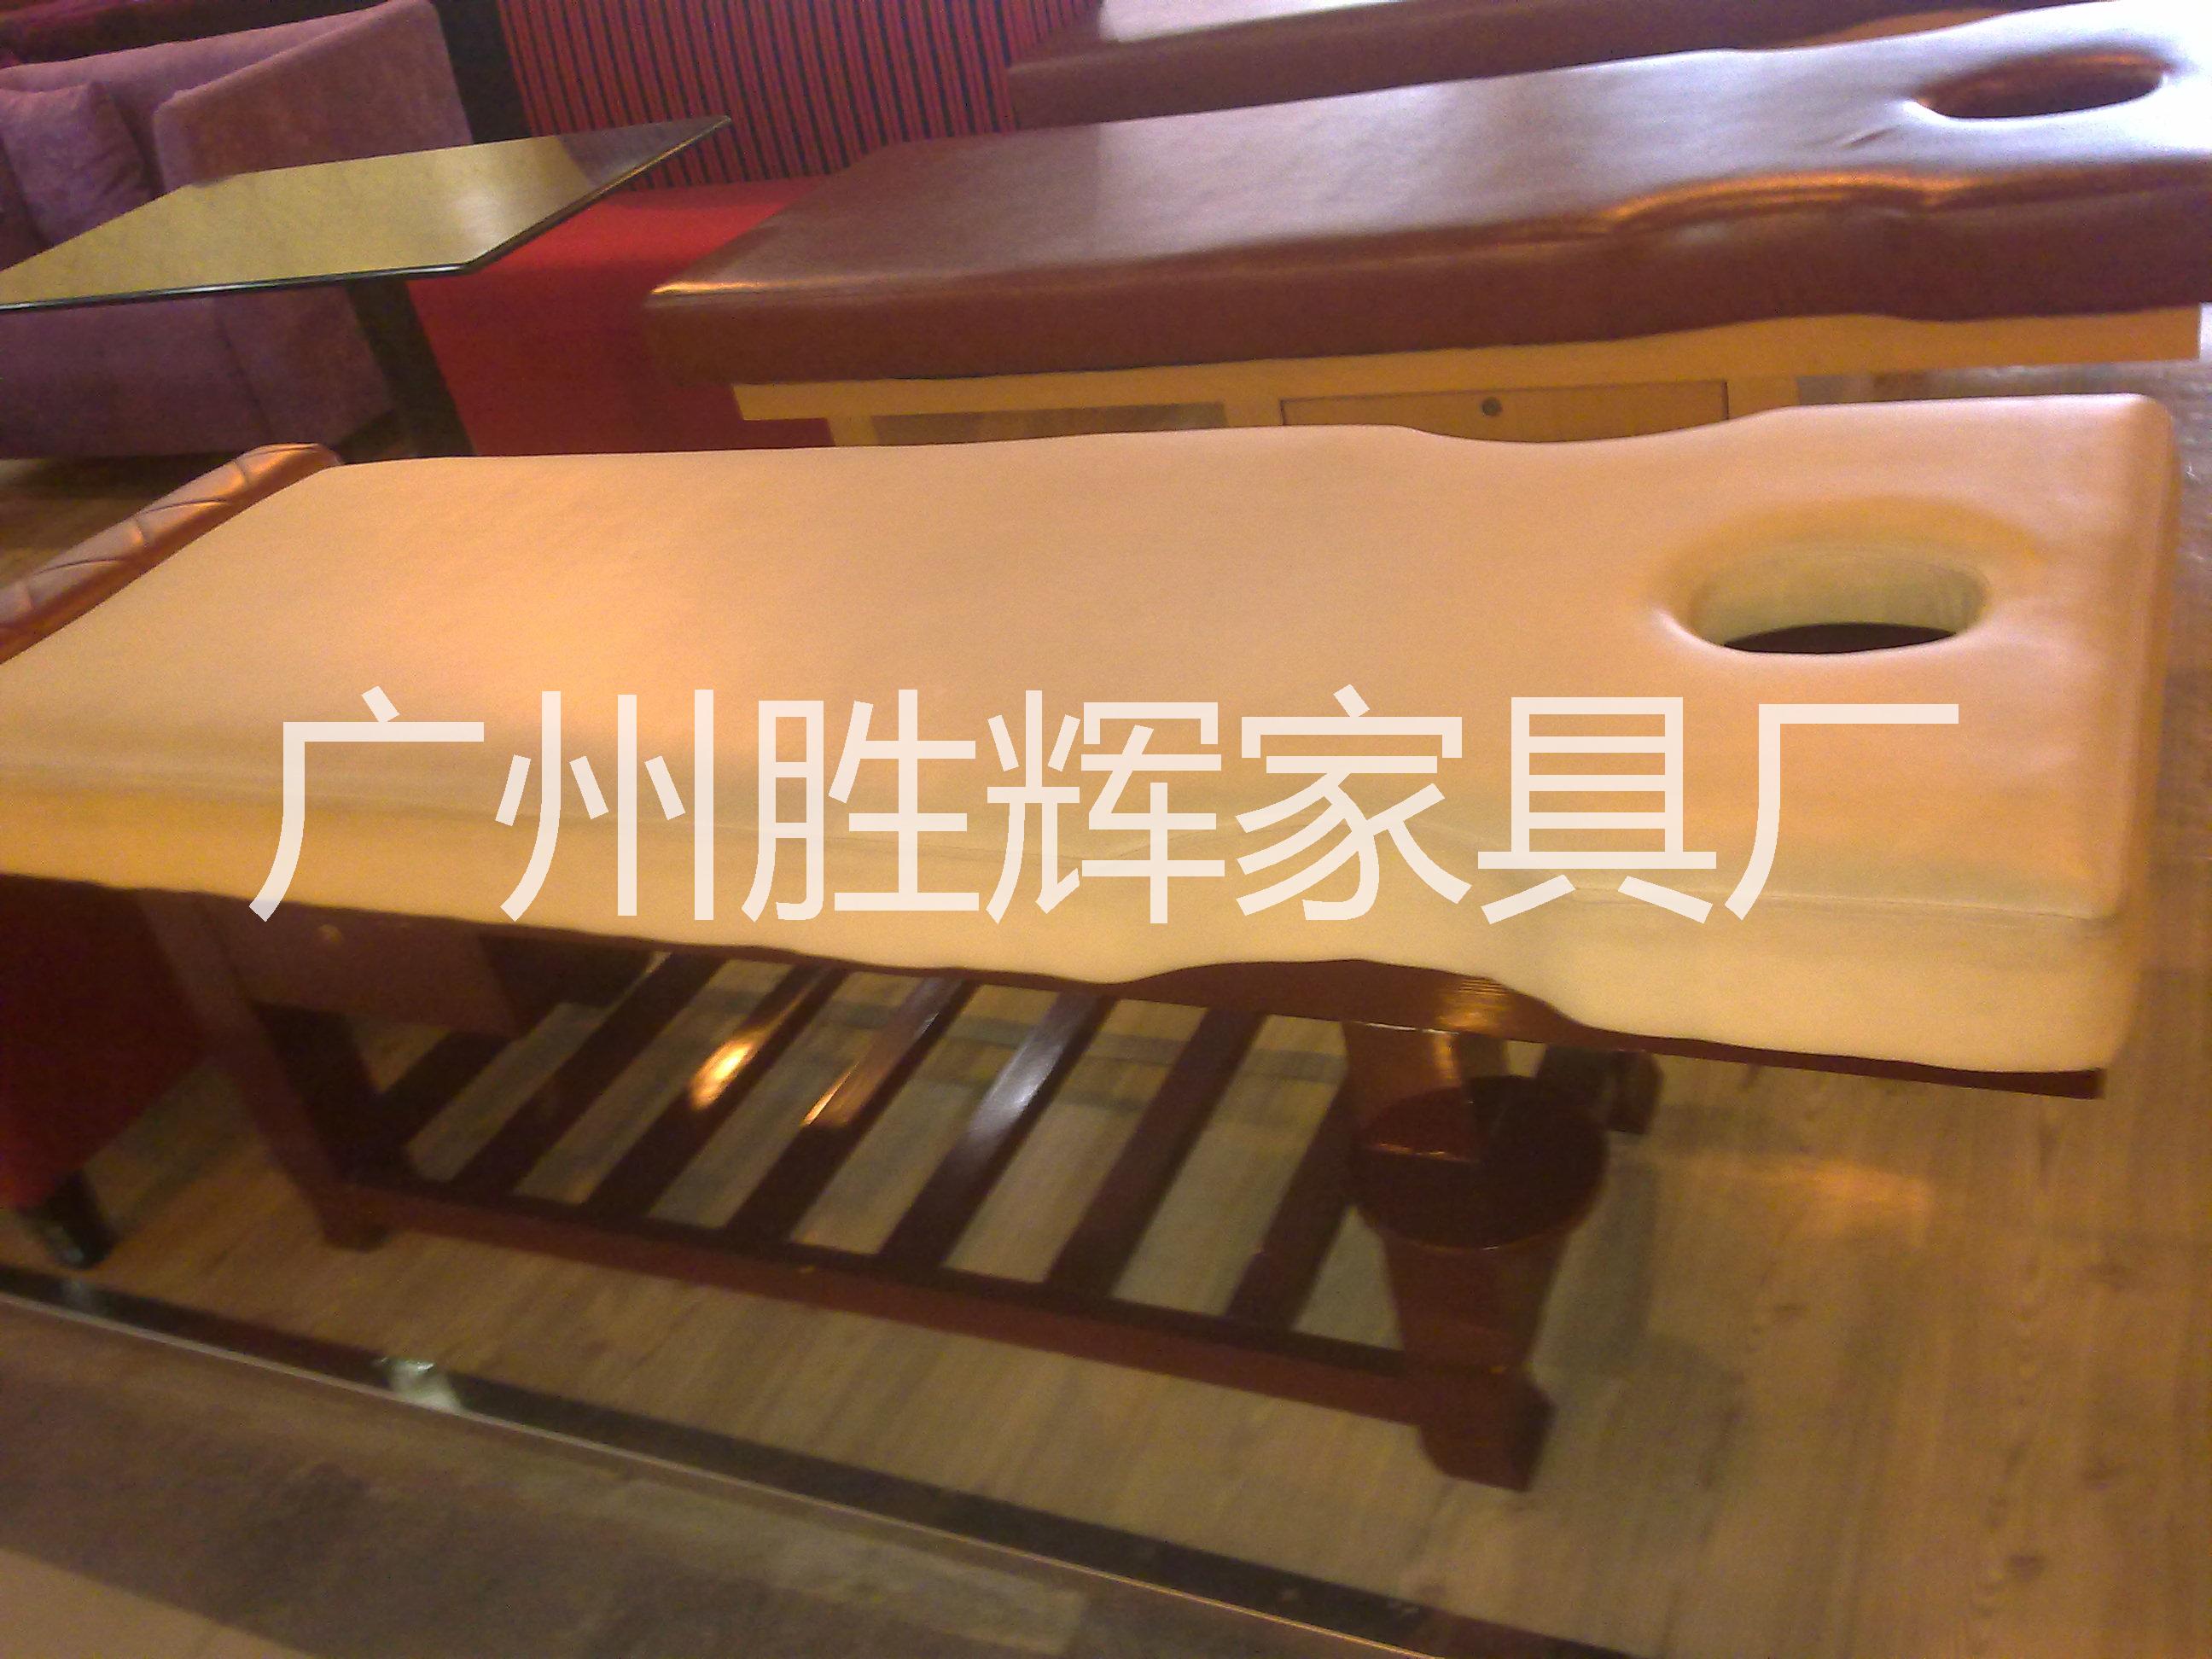 广东厂家专业生产按摩床 可按客户需求定制 质量保证图片